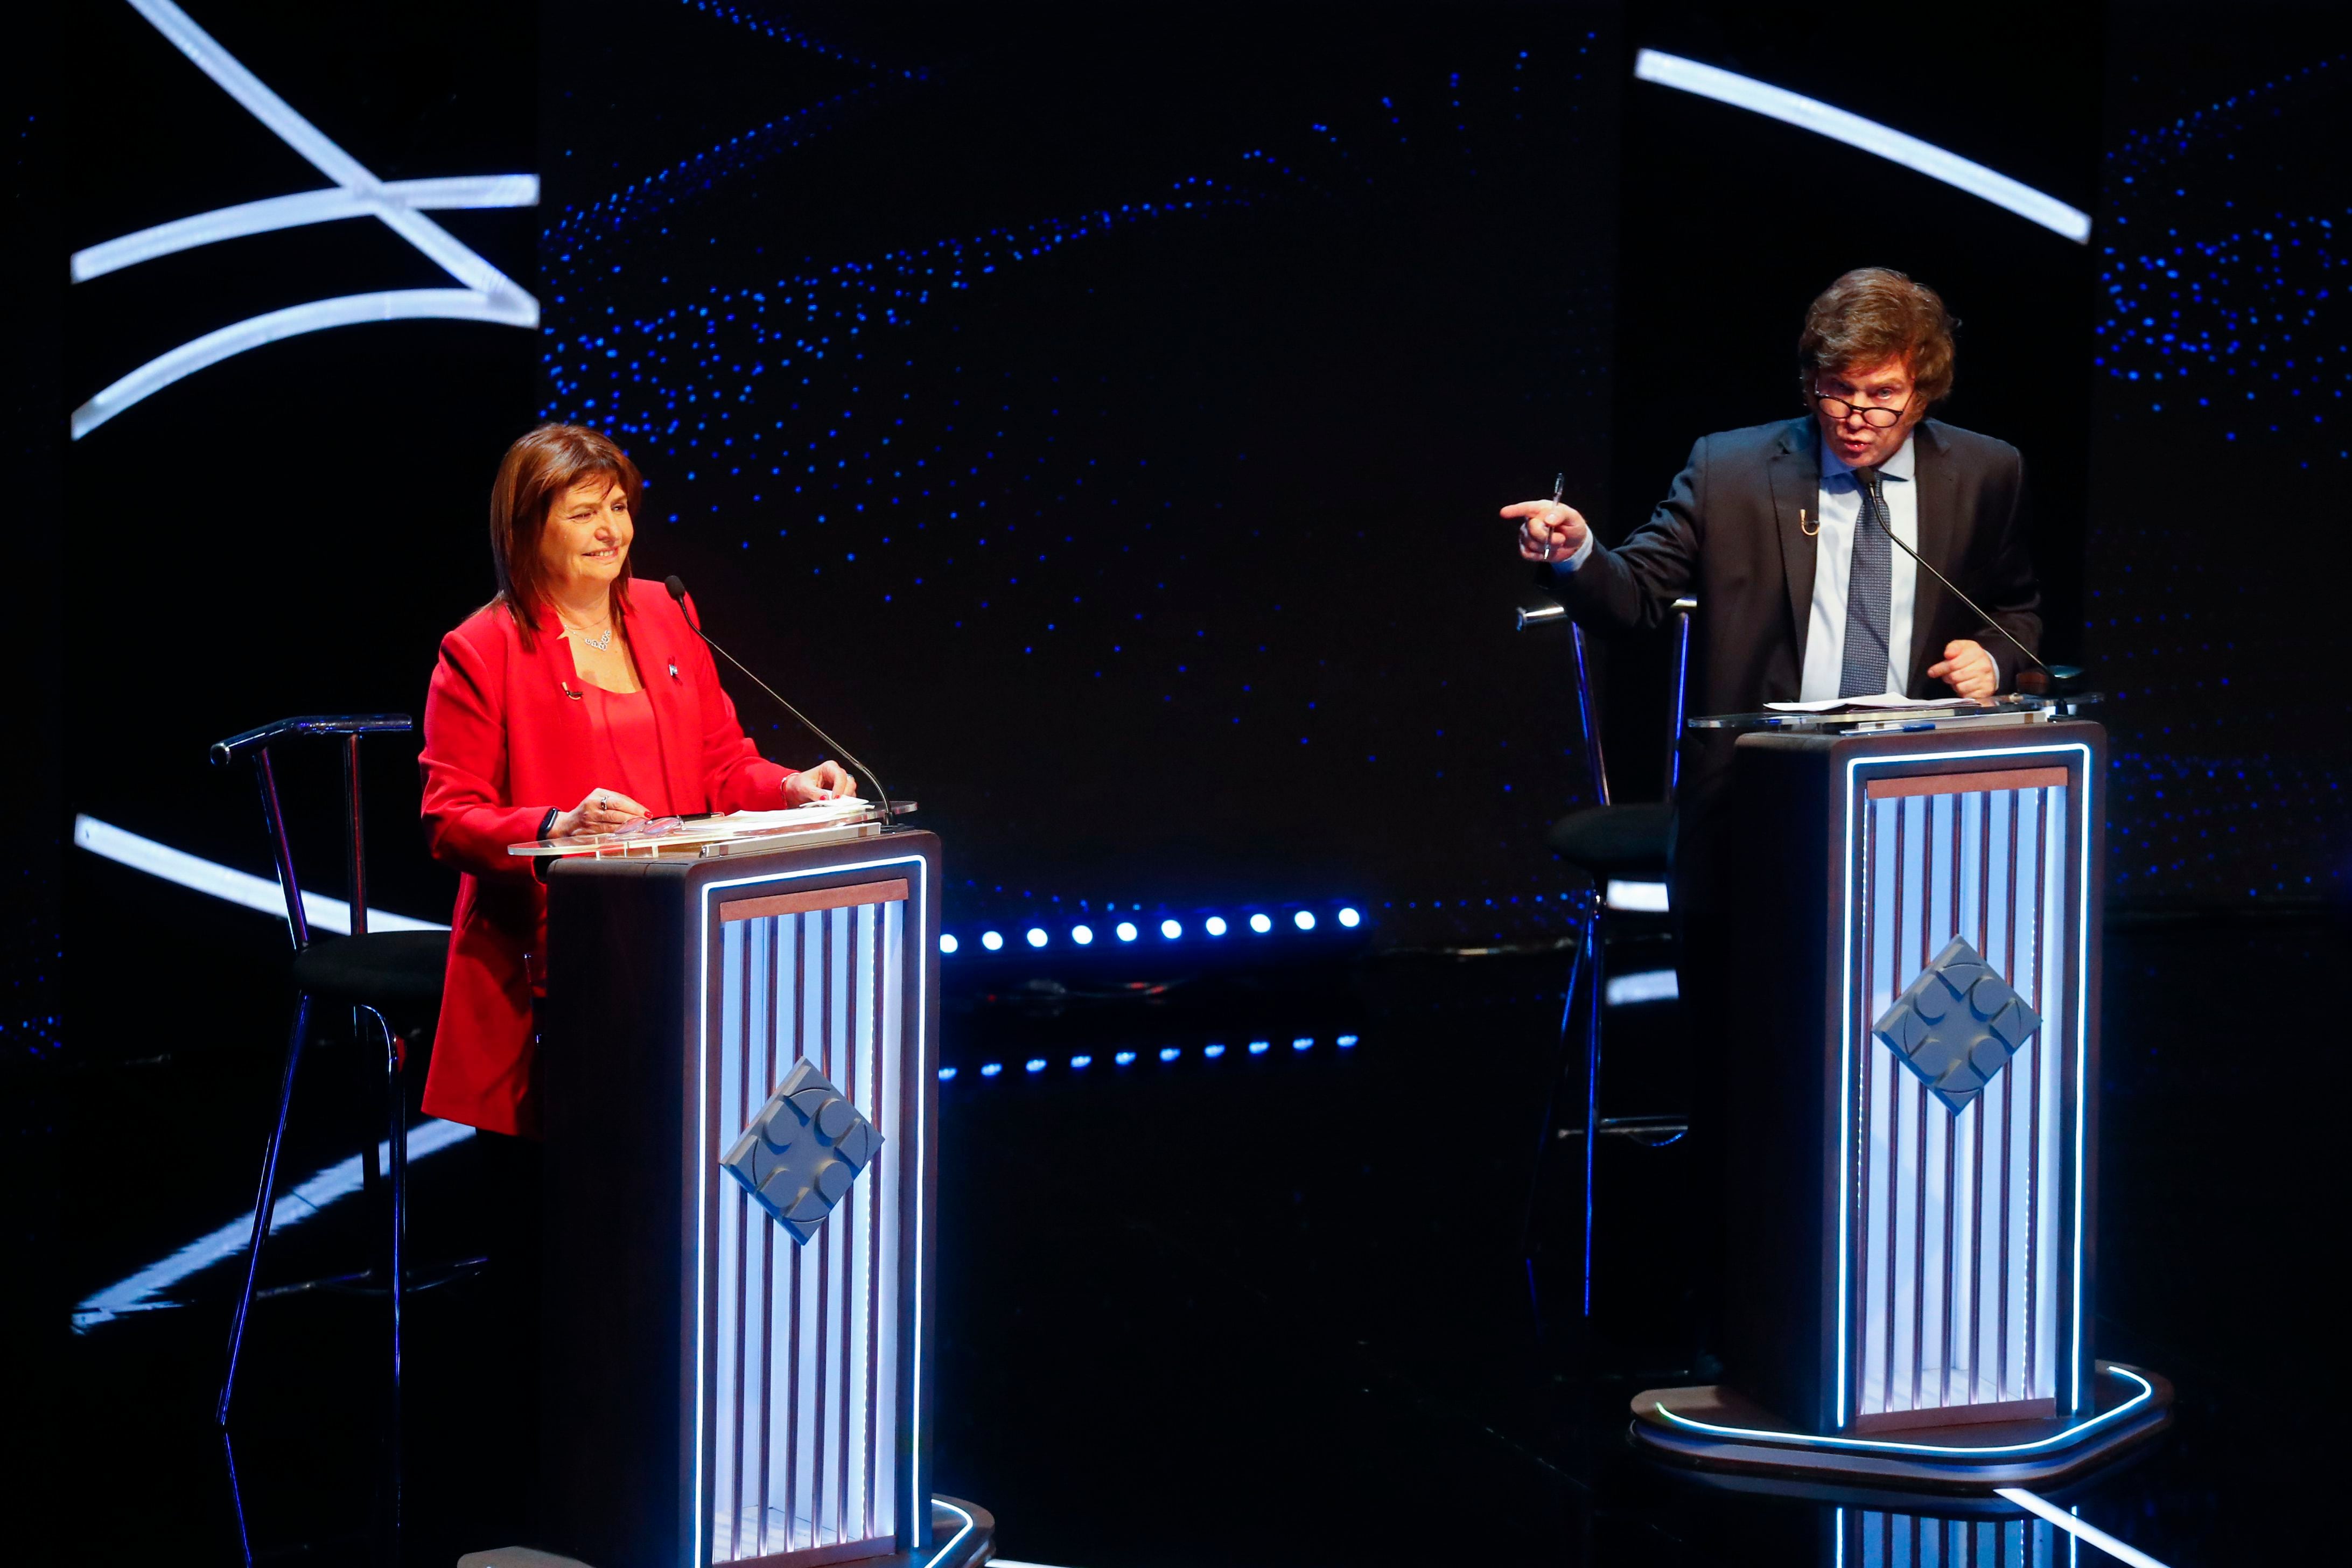 El candidato presidencial de la coalición Libertad Avanza, Javier Milei, a la derecha, se dirige a su rival Patricia Bullrich